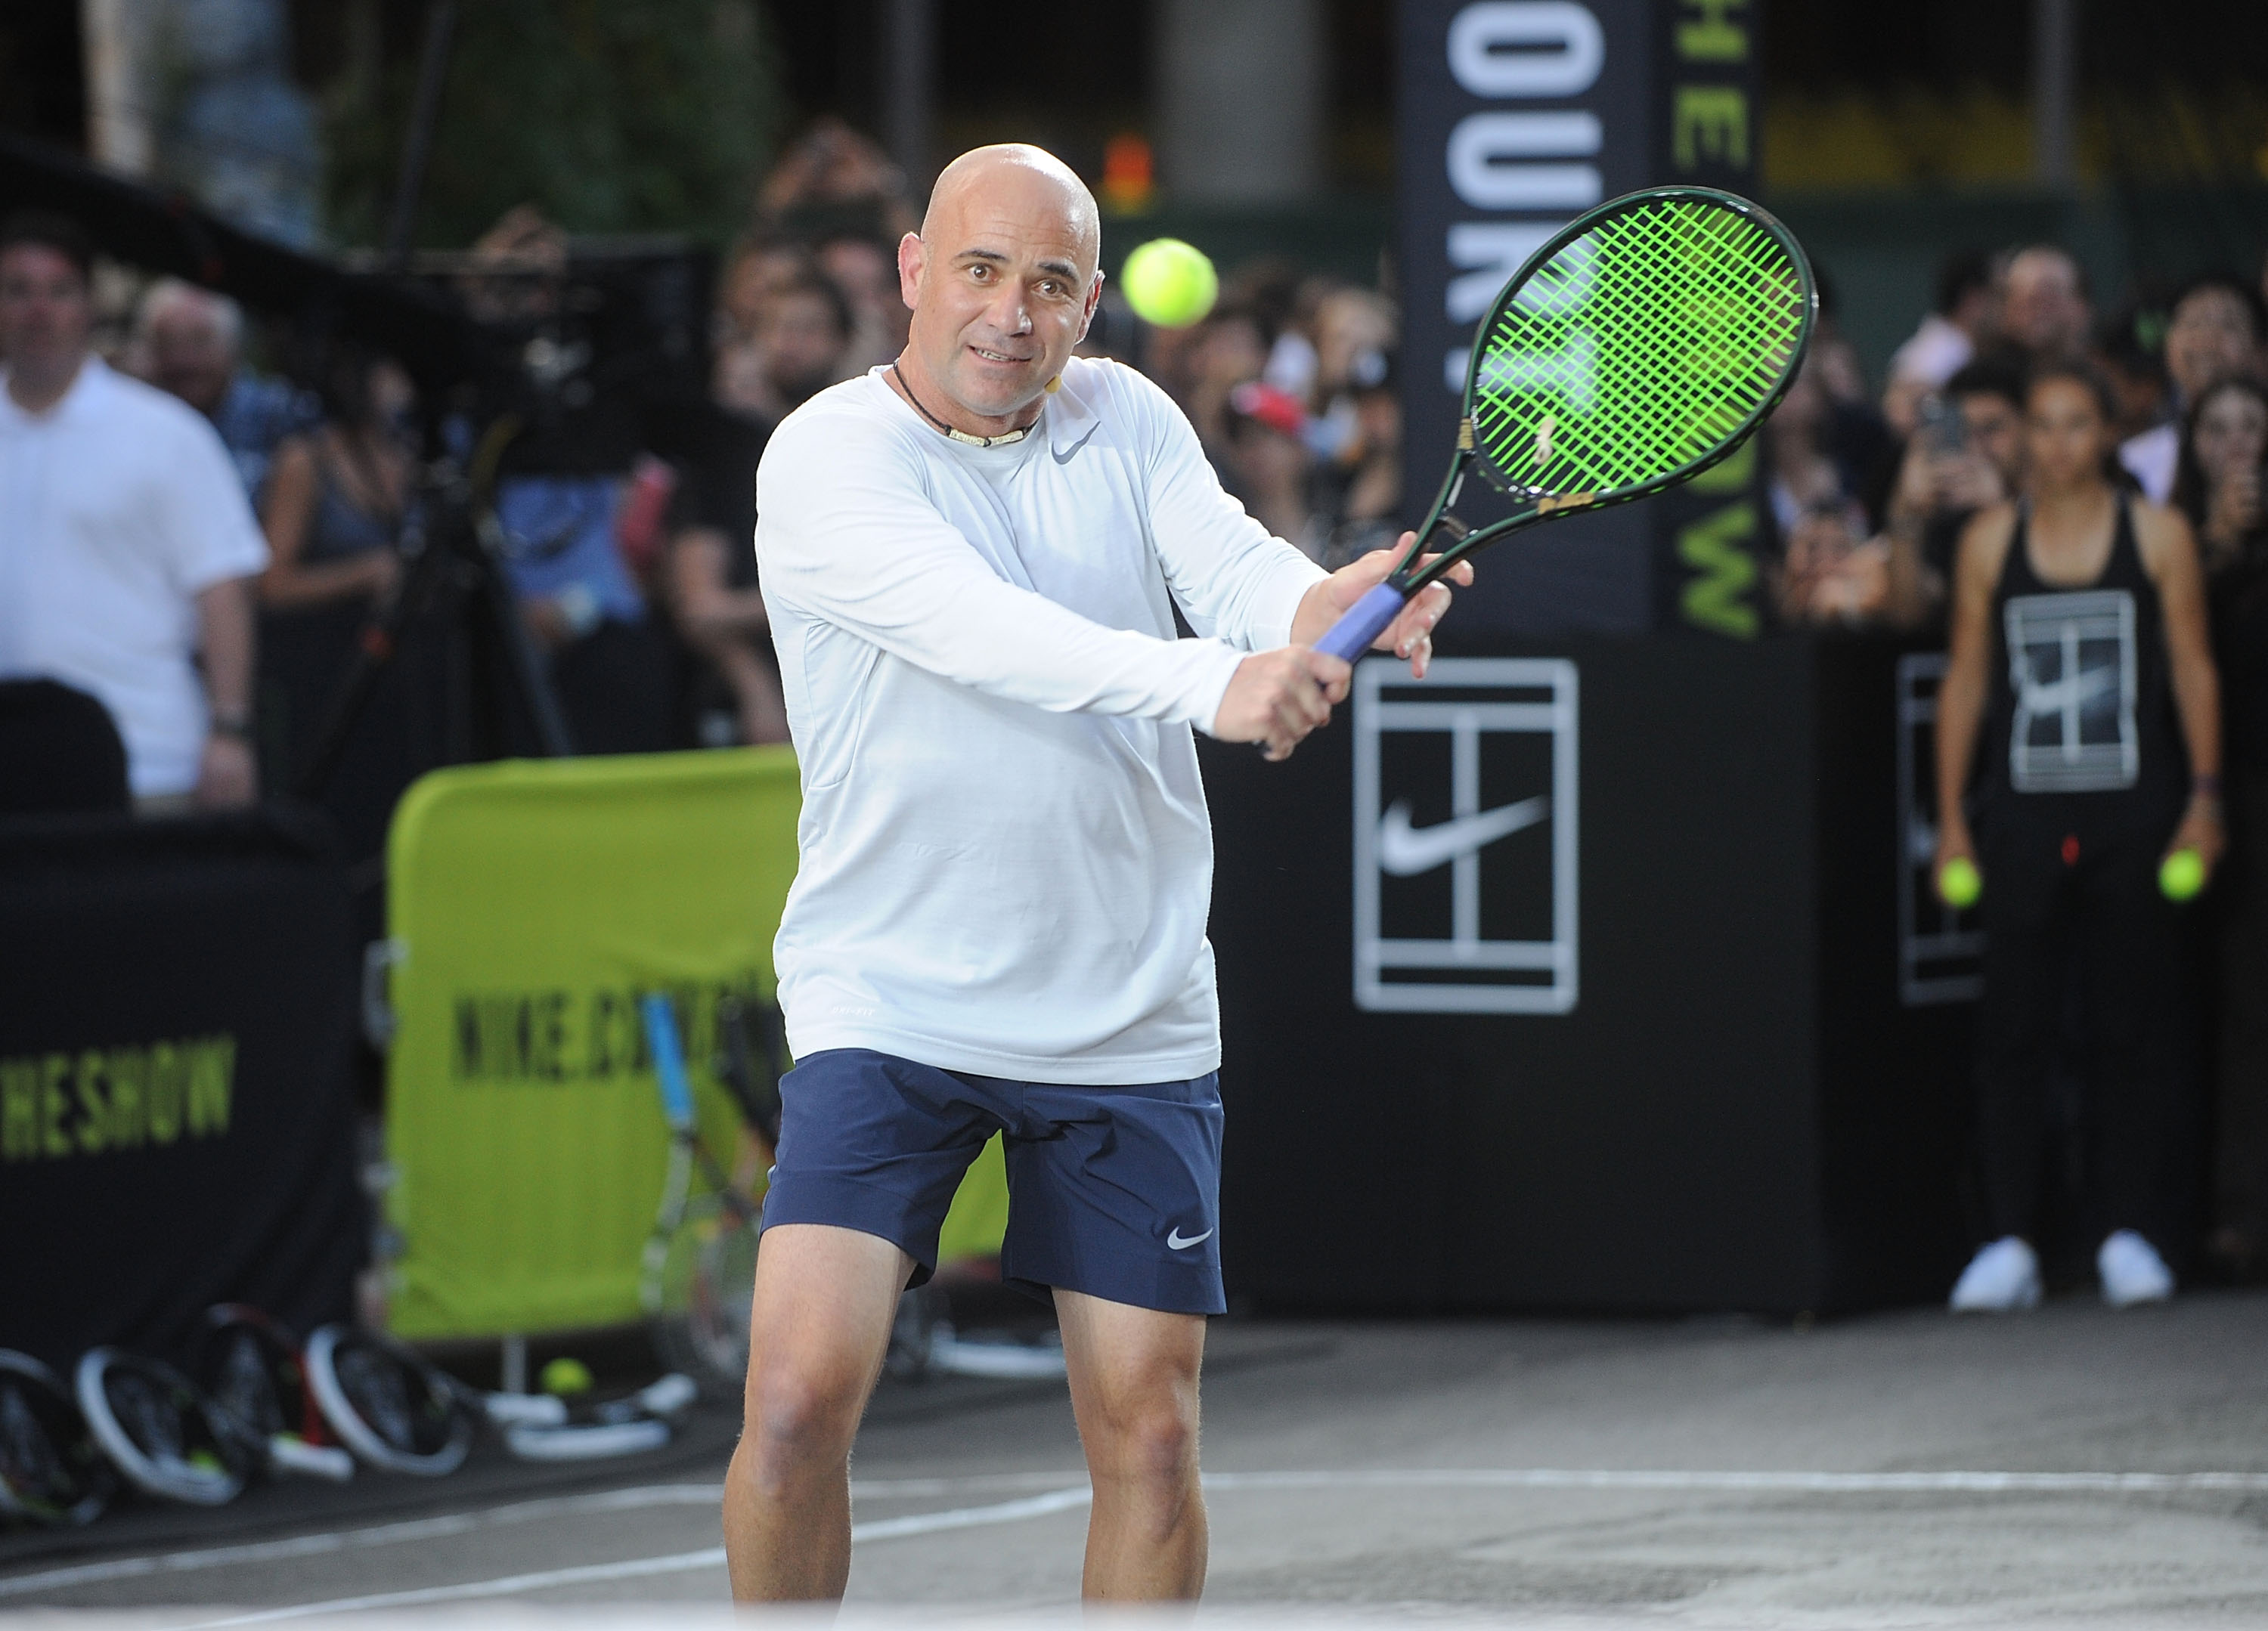 André Agassi wurde über die Plattform Udemy zum Tennislehrer